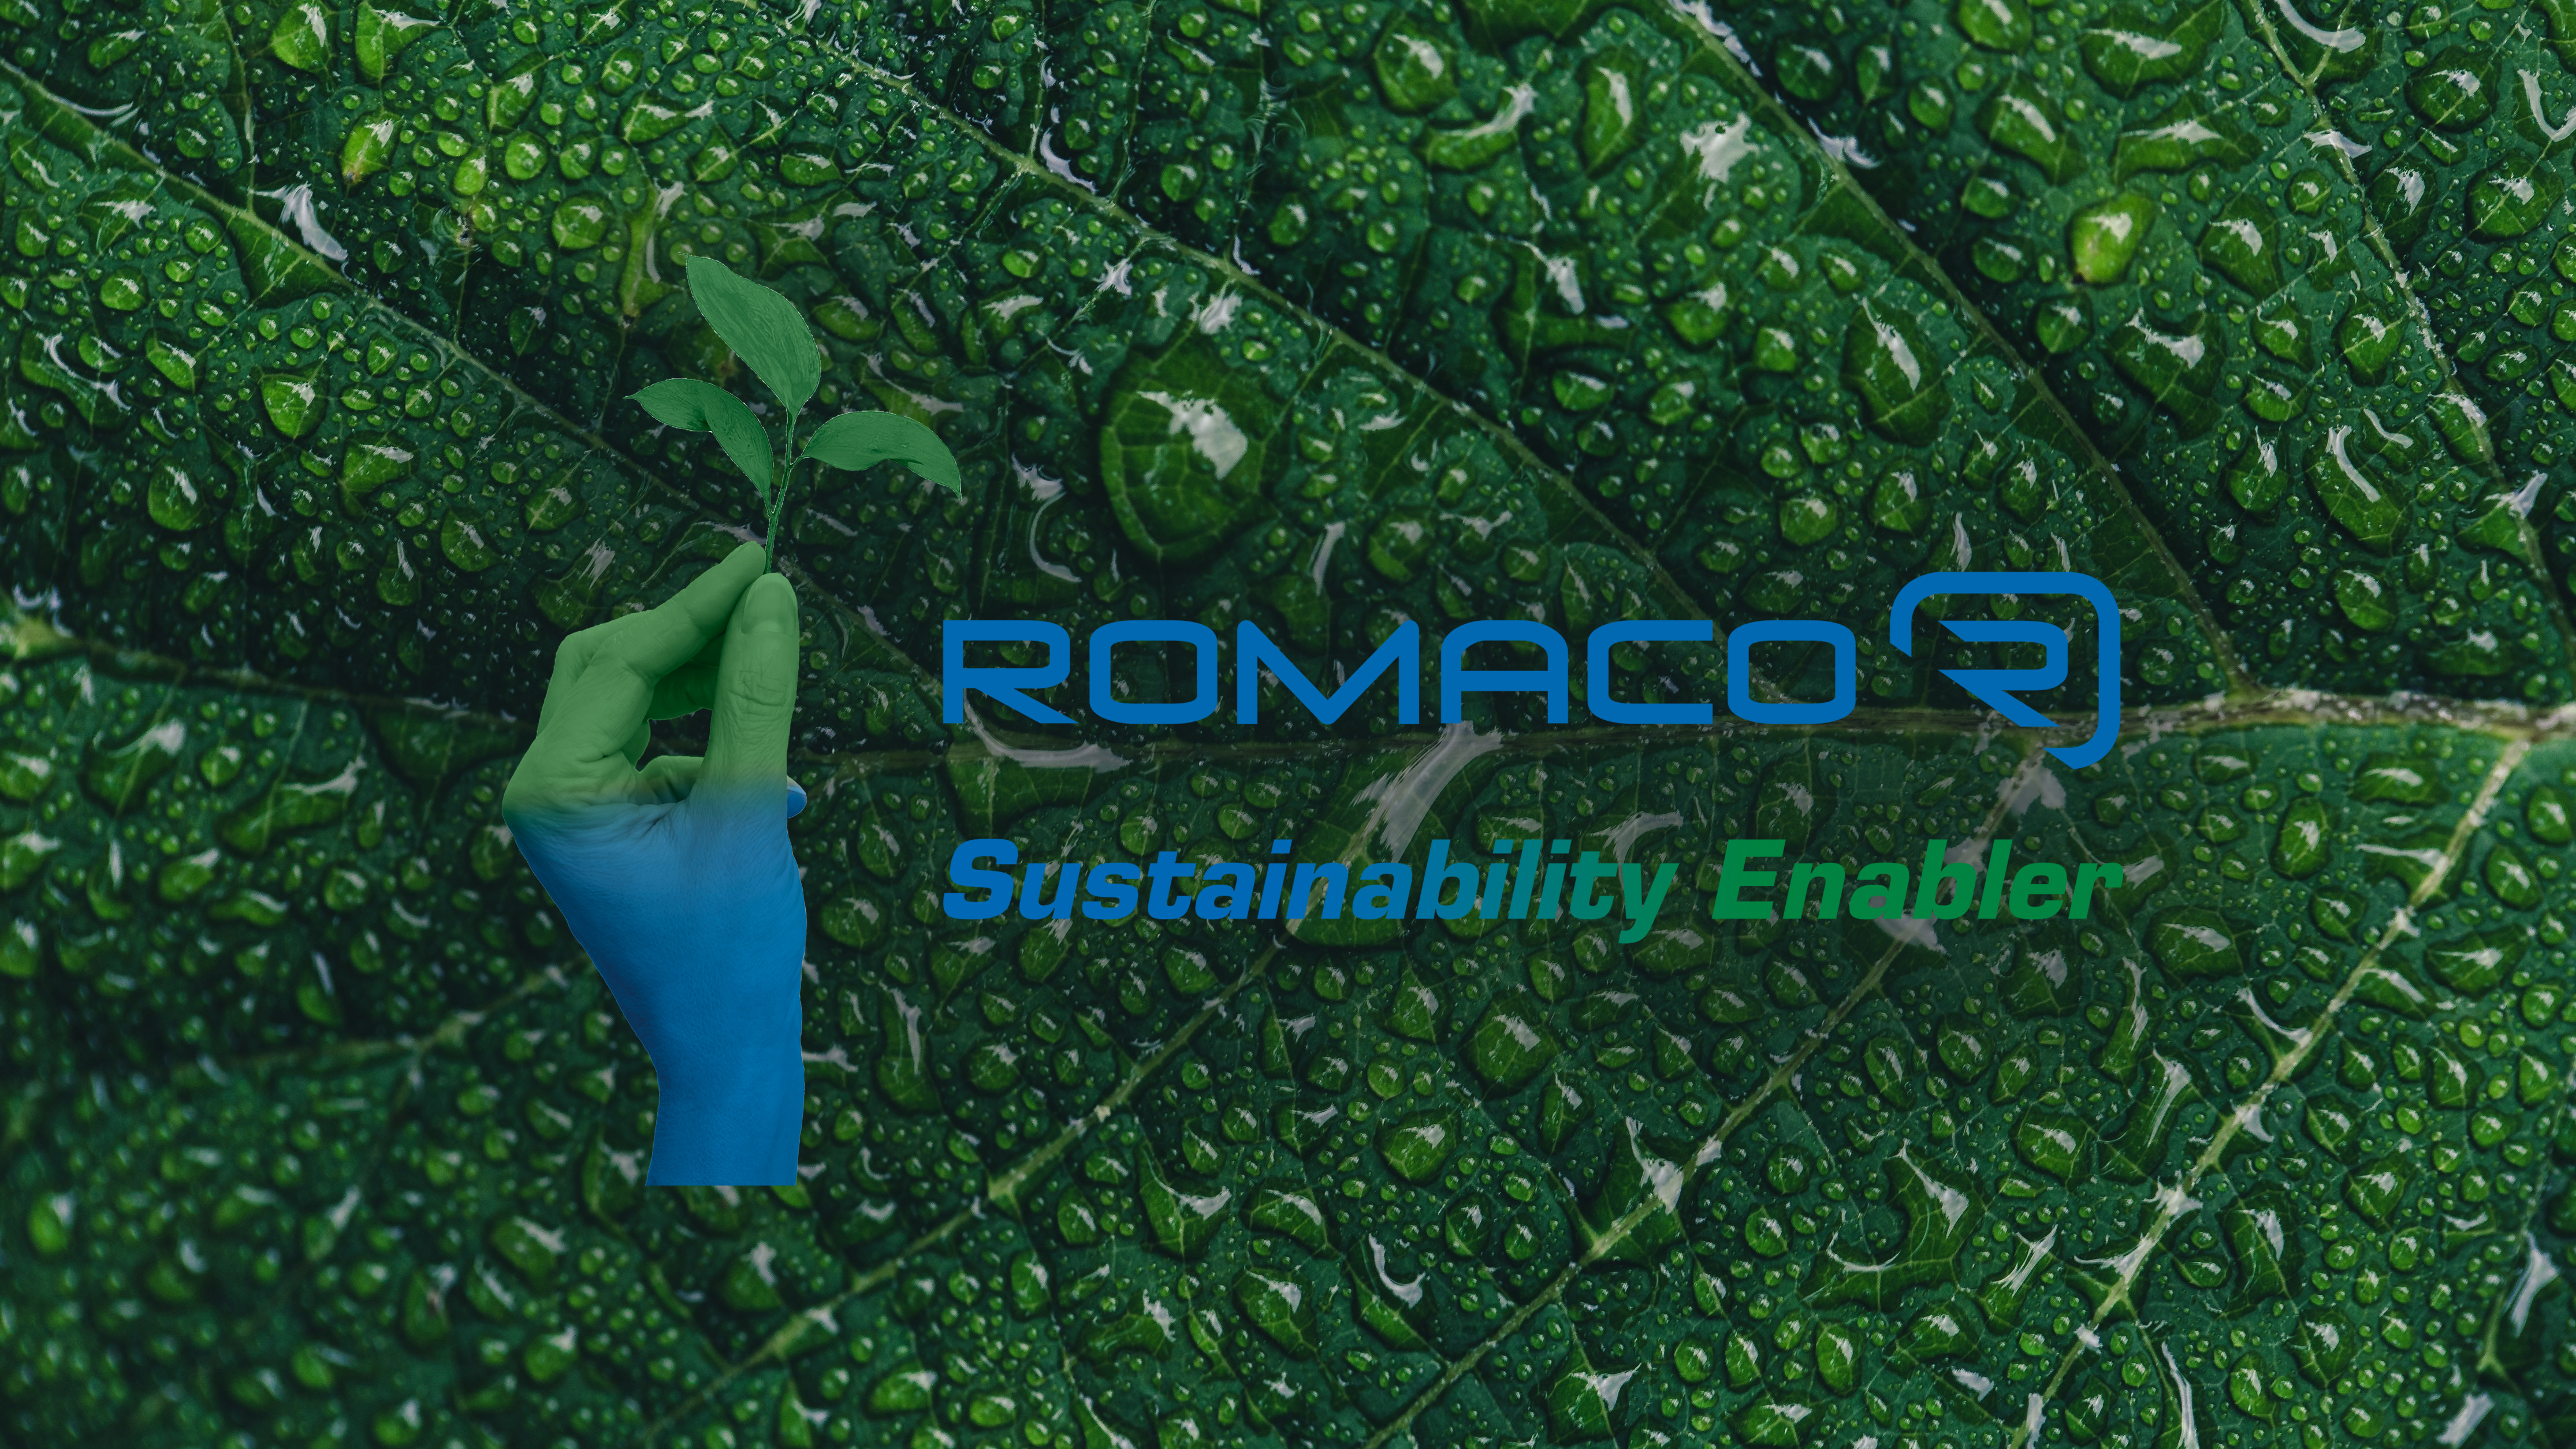 Romaco - Sustainability Enabler